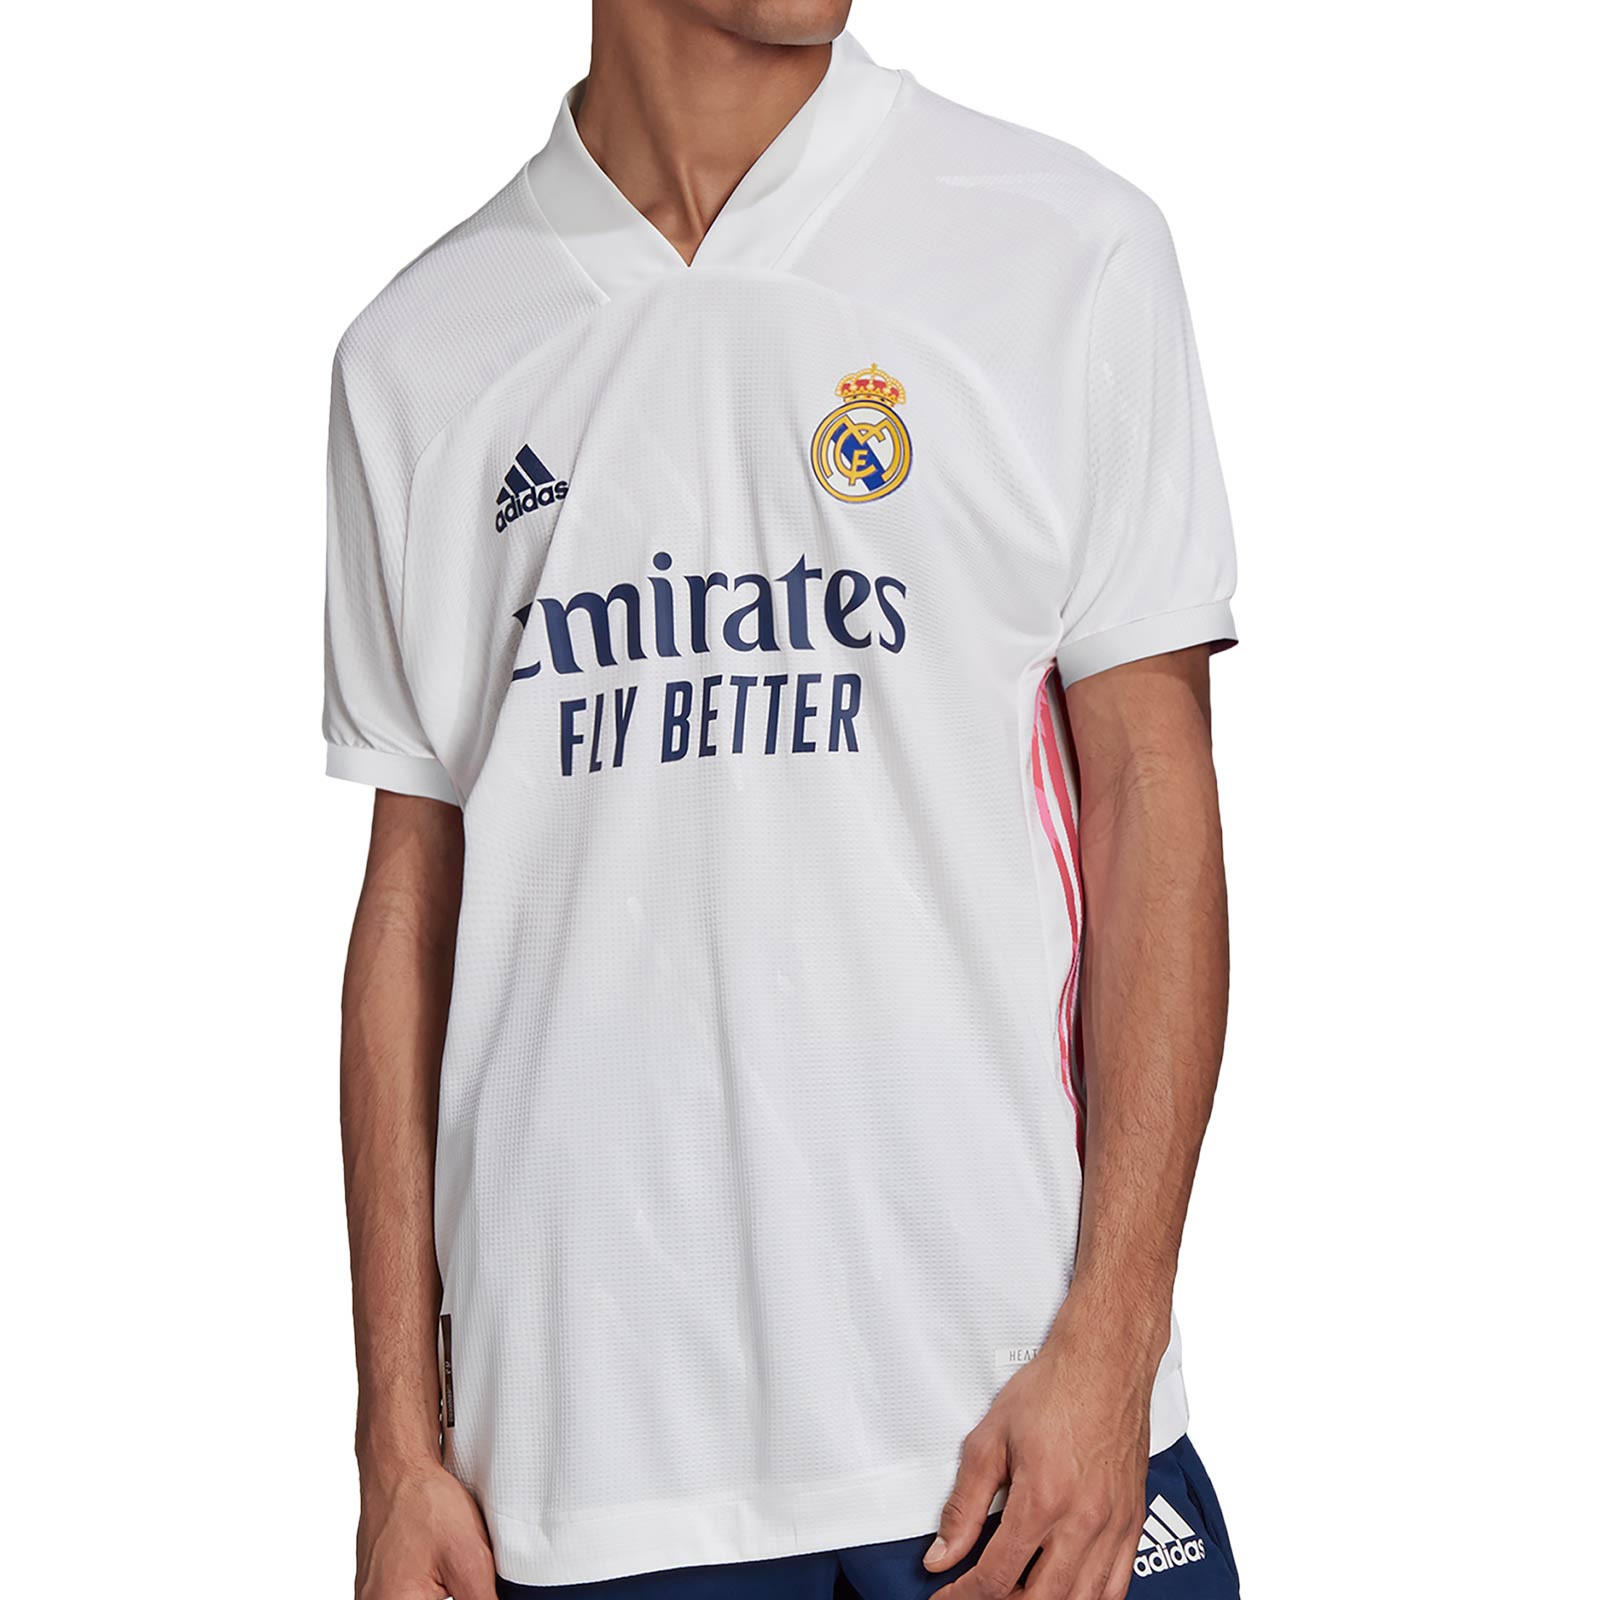 Collar ego Siete Camiseta adidas Real Madrid 2020 2021 authentic | futbolmania